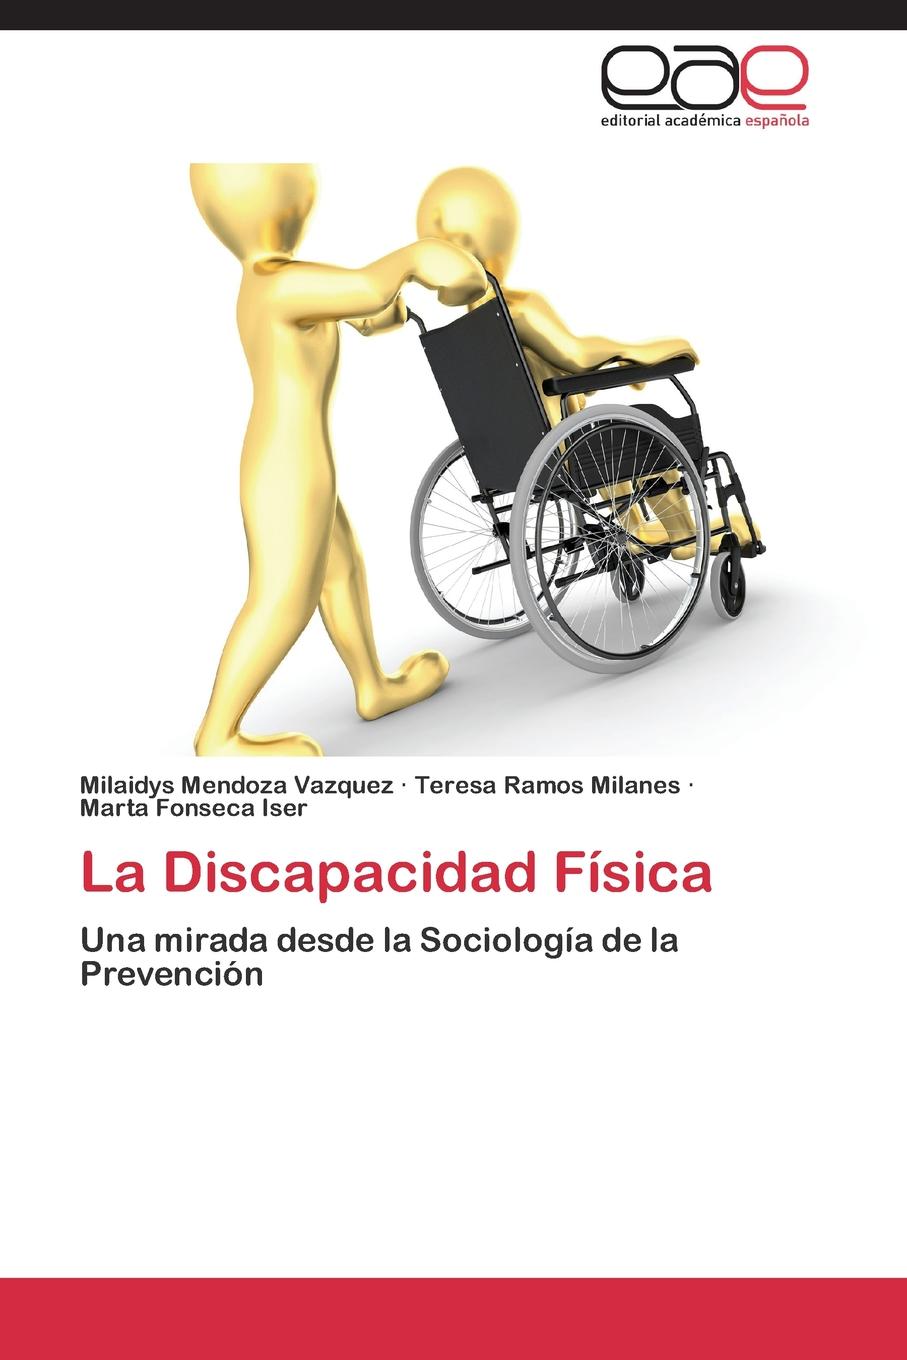 La Discapacidad Fisica